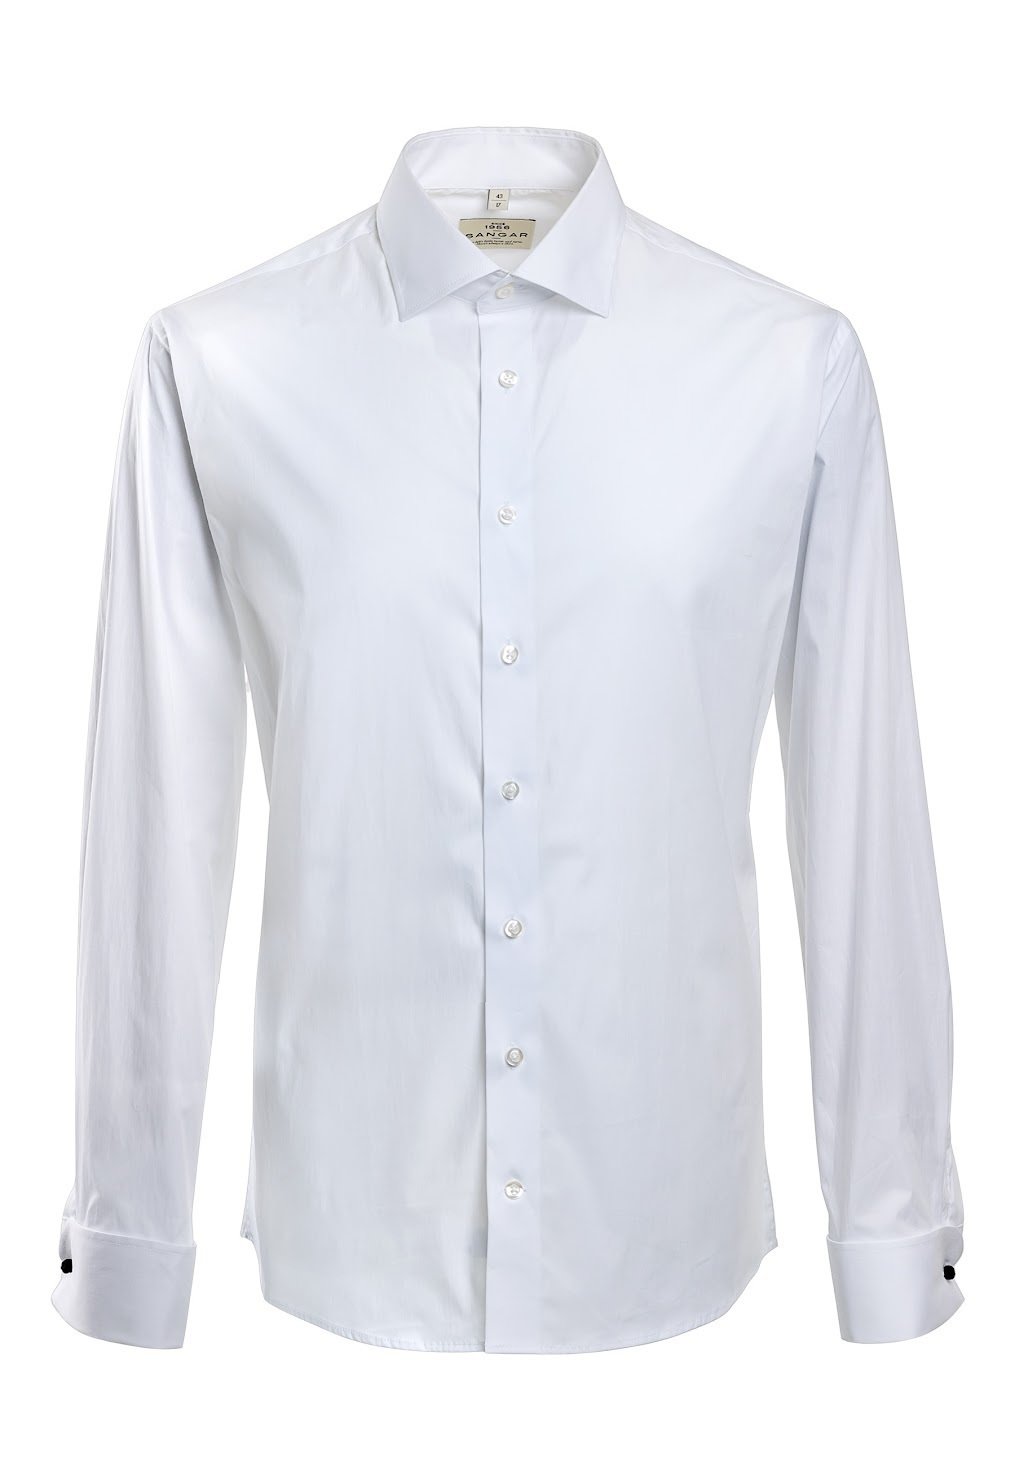 Деловая рубашка SLIM FIT Sangar, белый